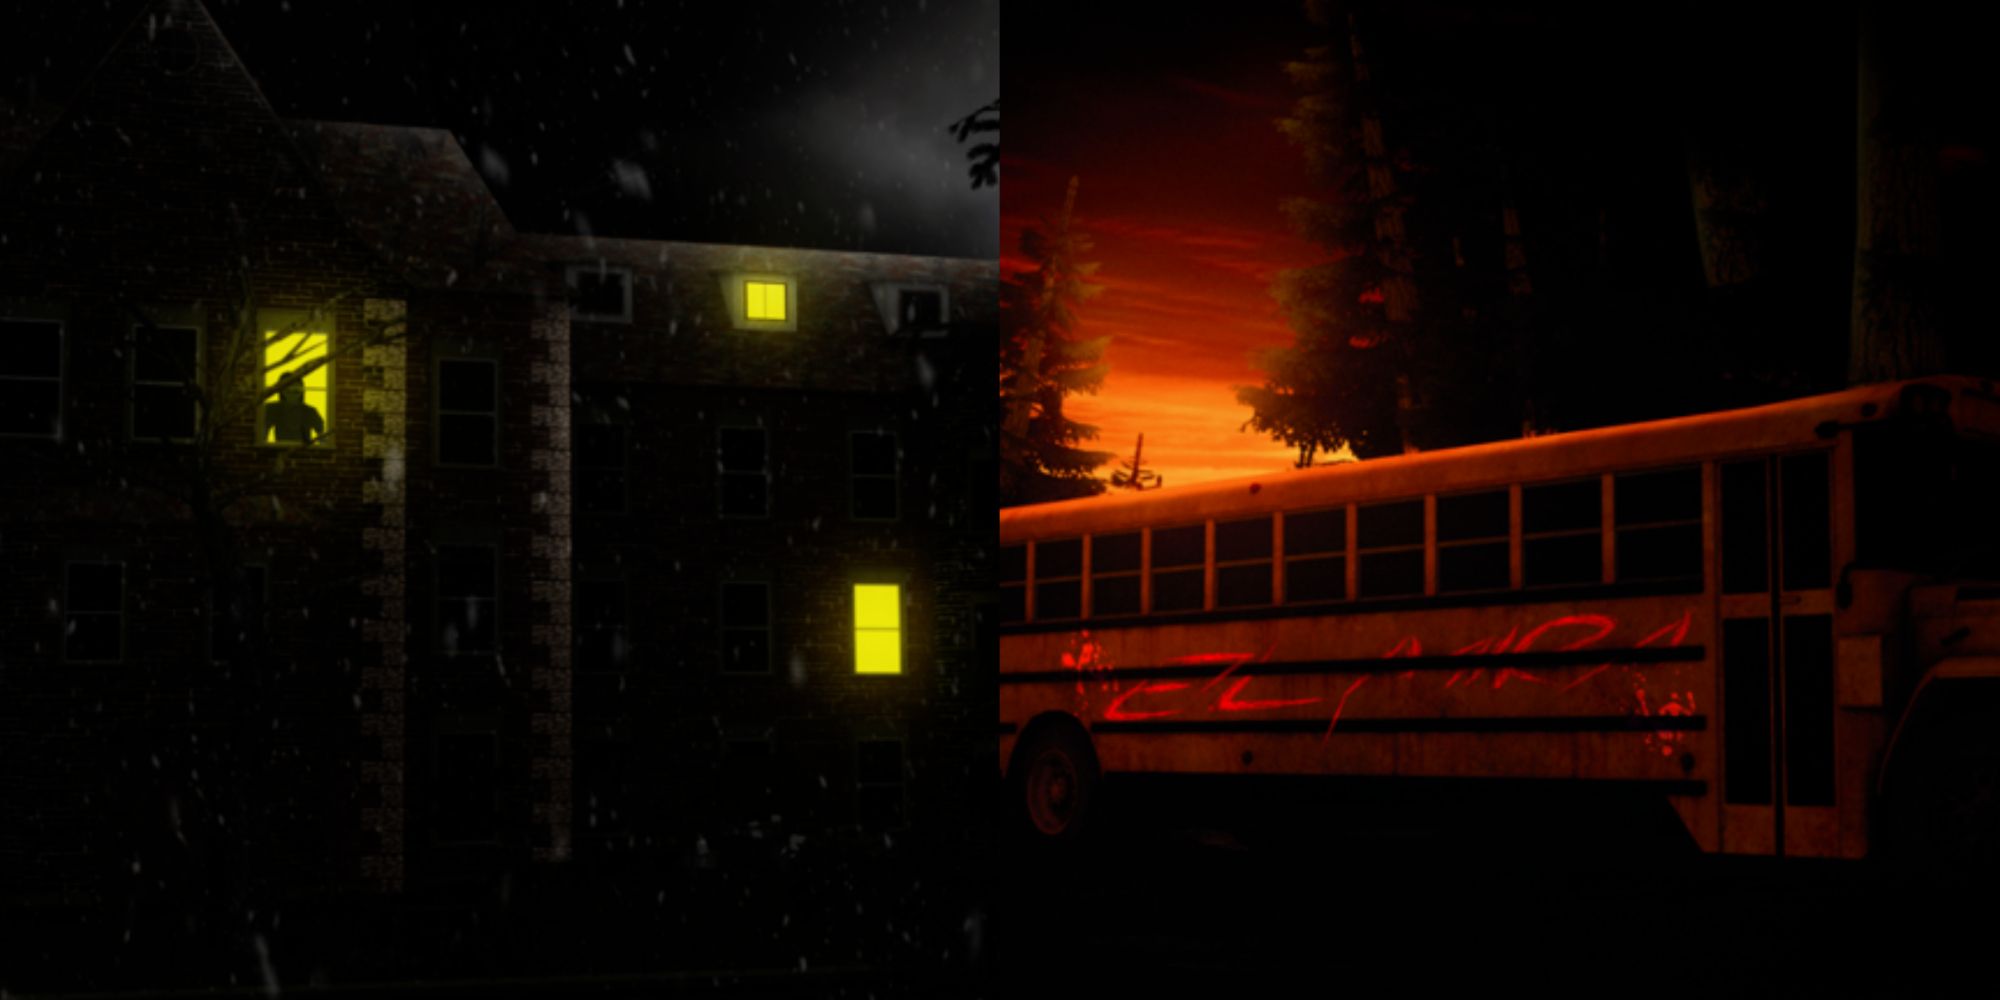 Elmira Spooky Building And Schoolbus